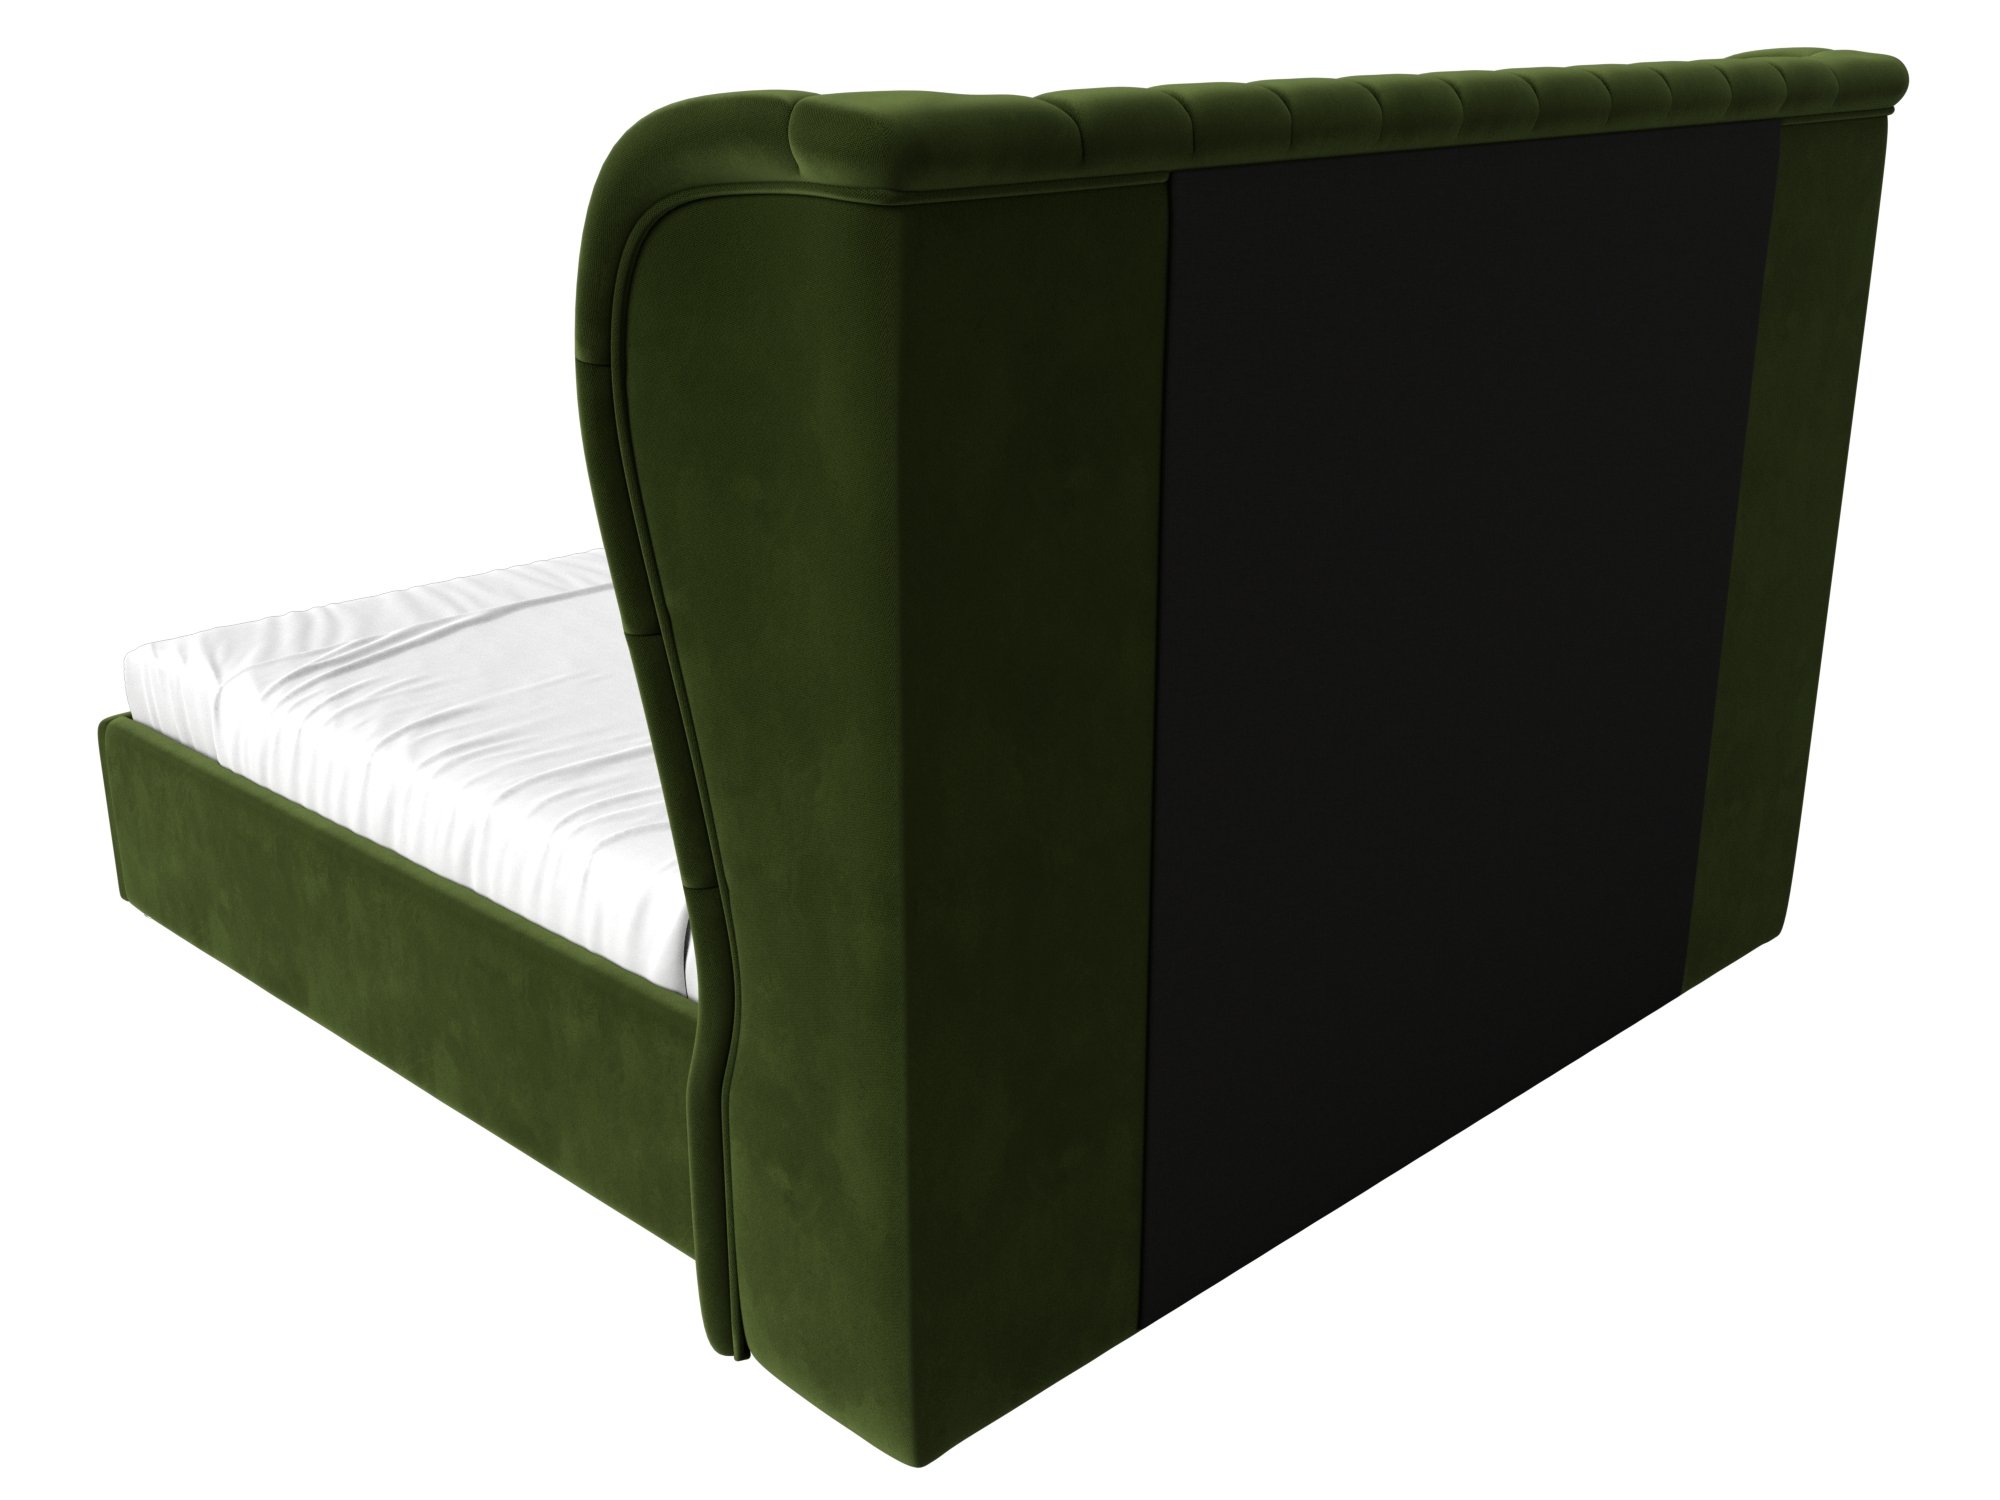 Интерьерная кровать Далия 180 (Зеленый)